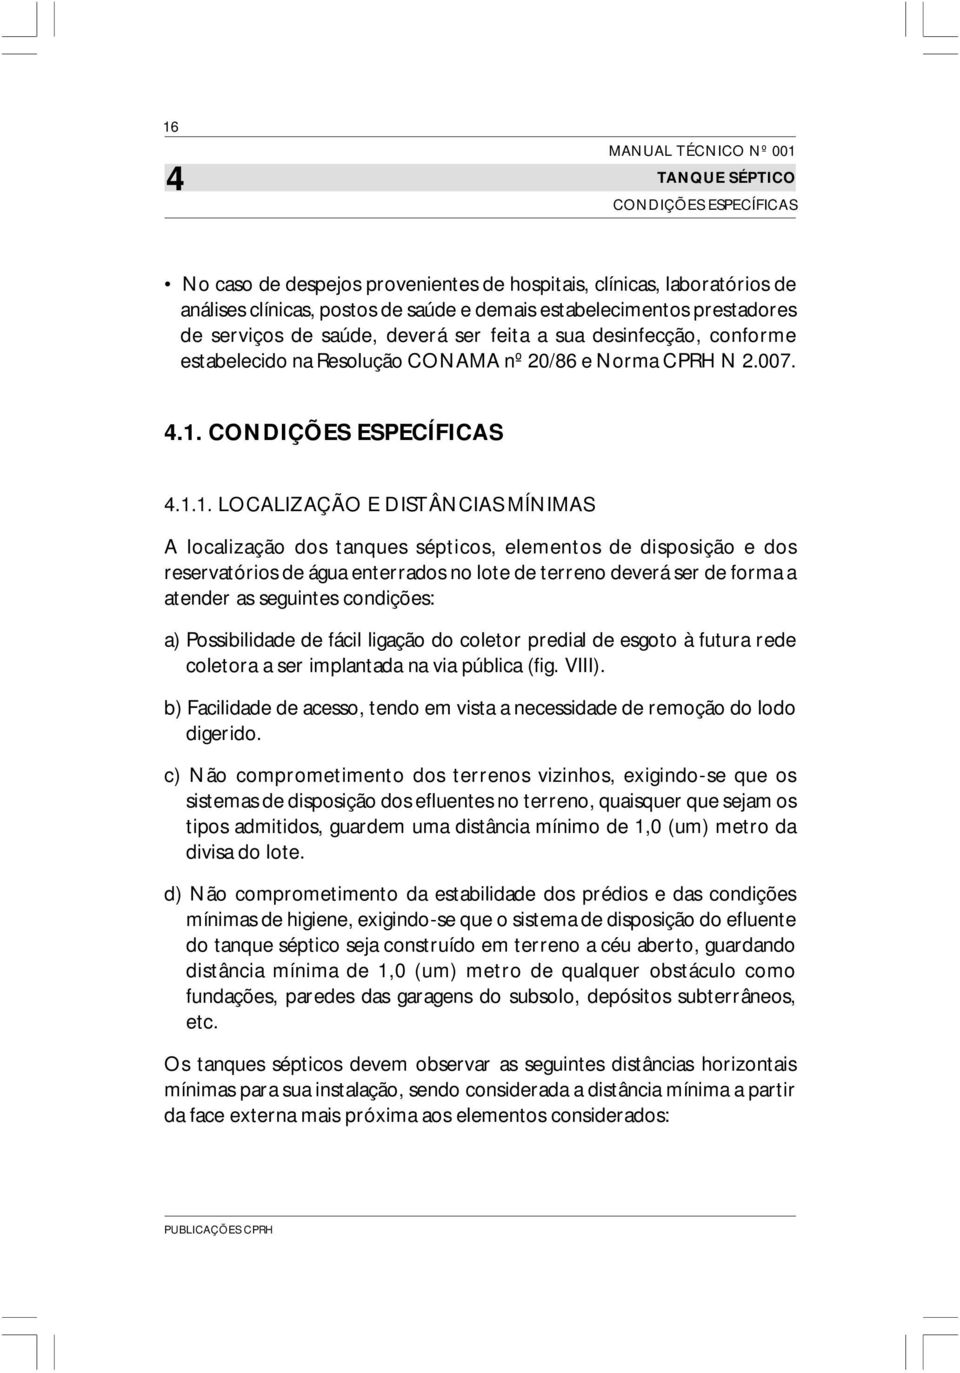 CONDIÇÕES ESPECÍFICAS 4.1.